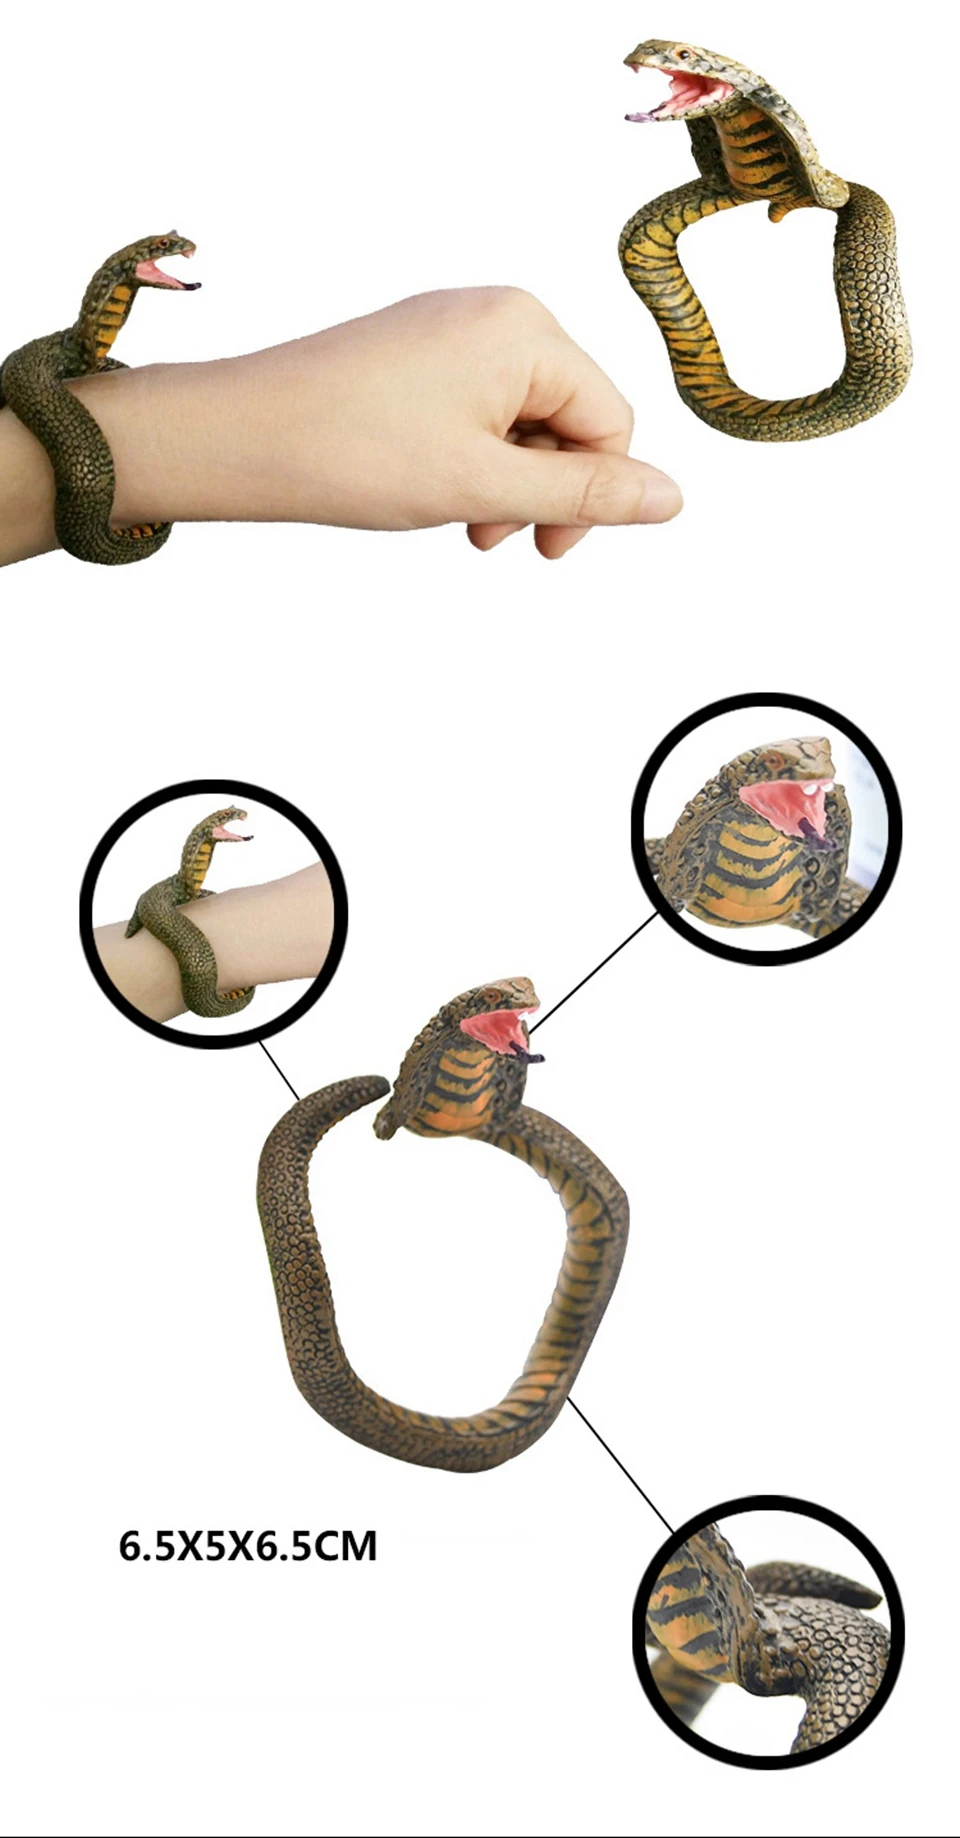 Имитация змеиного браслета Кобра Гремучая змея питон модель шутка смешная страшная игрушка поддельные змеи фигура семейные вечерние игрушки для детей